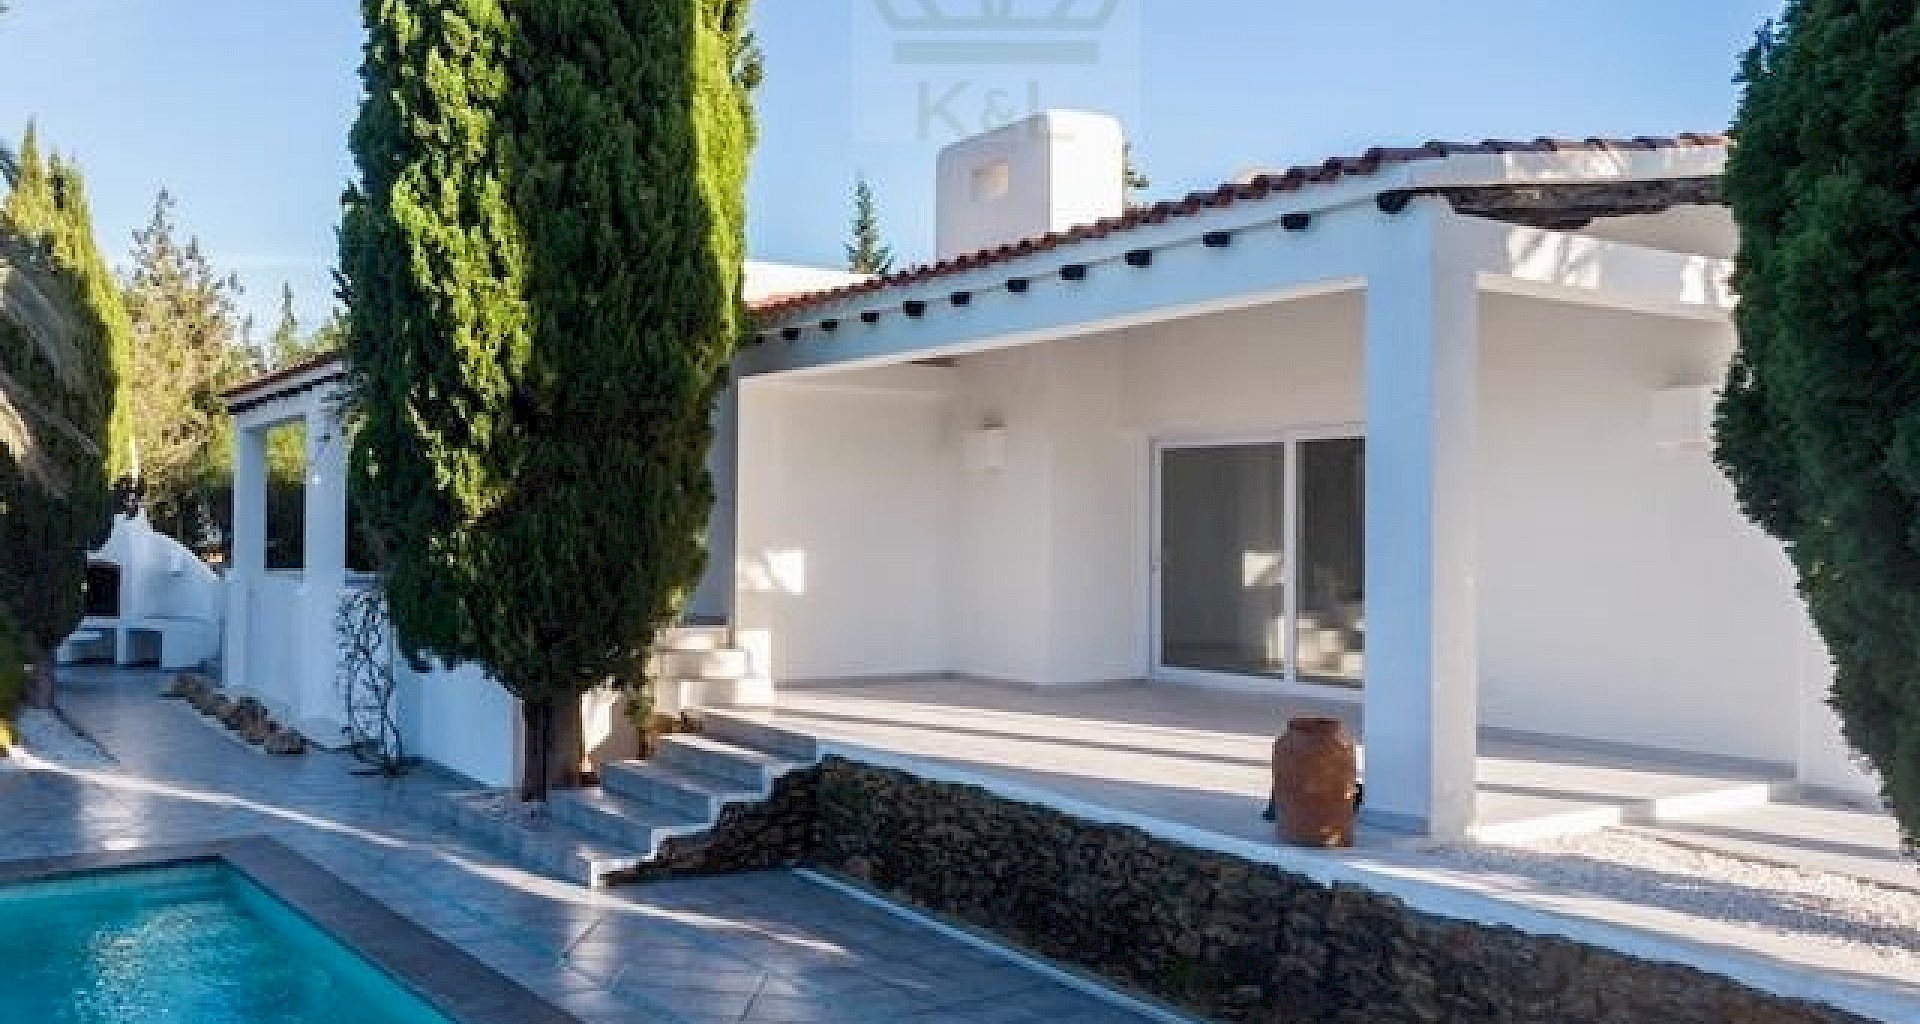 KROHN & LUEDEMANN Casa completamente renovada en Ibiza con piscina y mucha privacidad Benimussa (3)